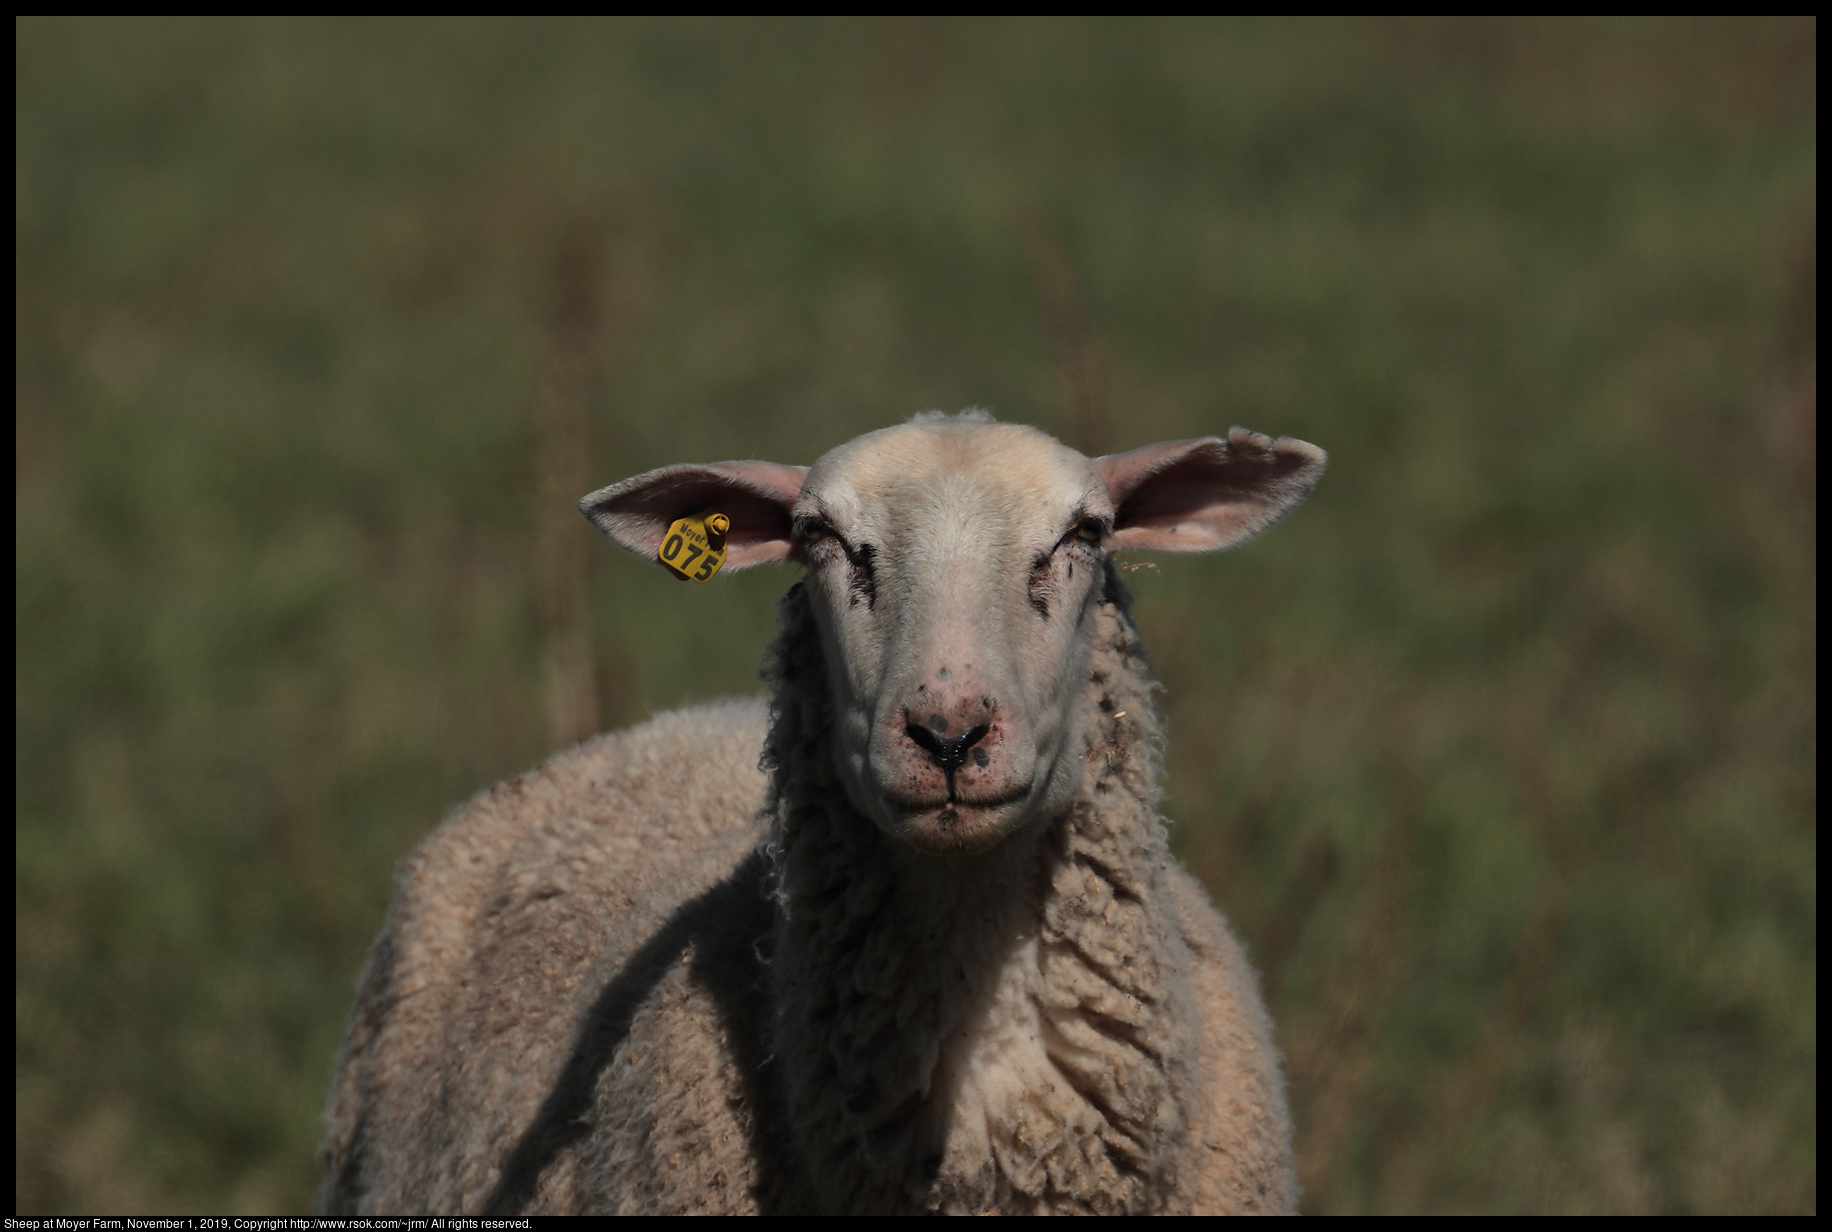 Sheep at Moyer Farm, November 1, 2019